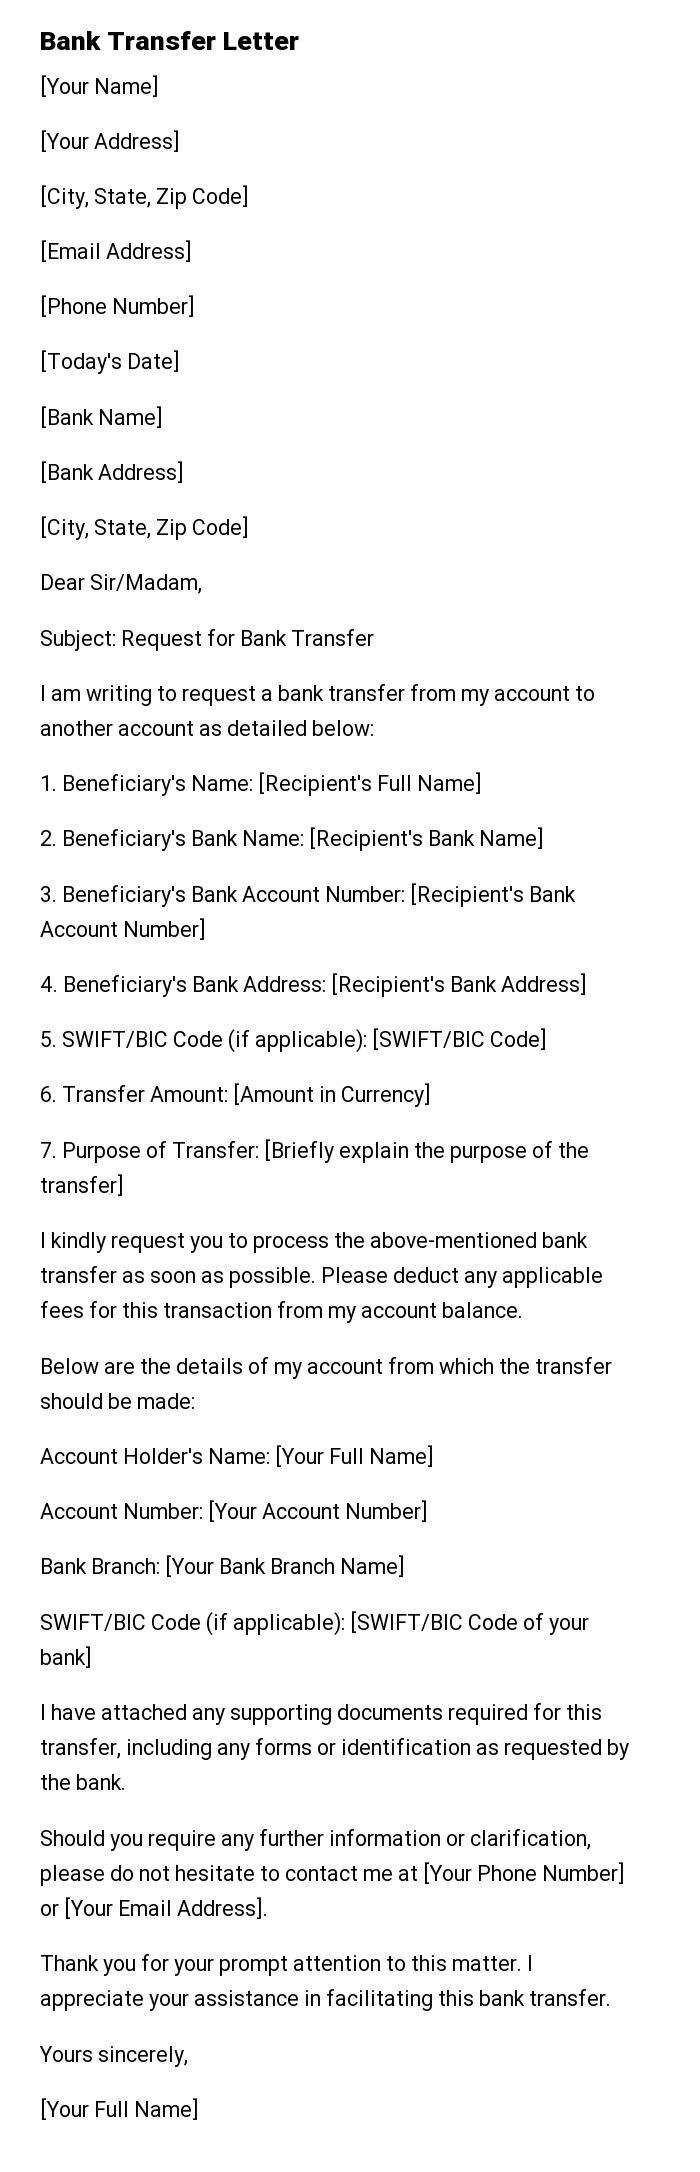 Bank Transfer Letter